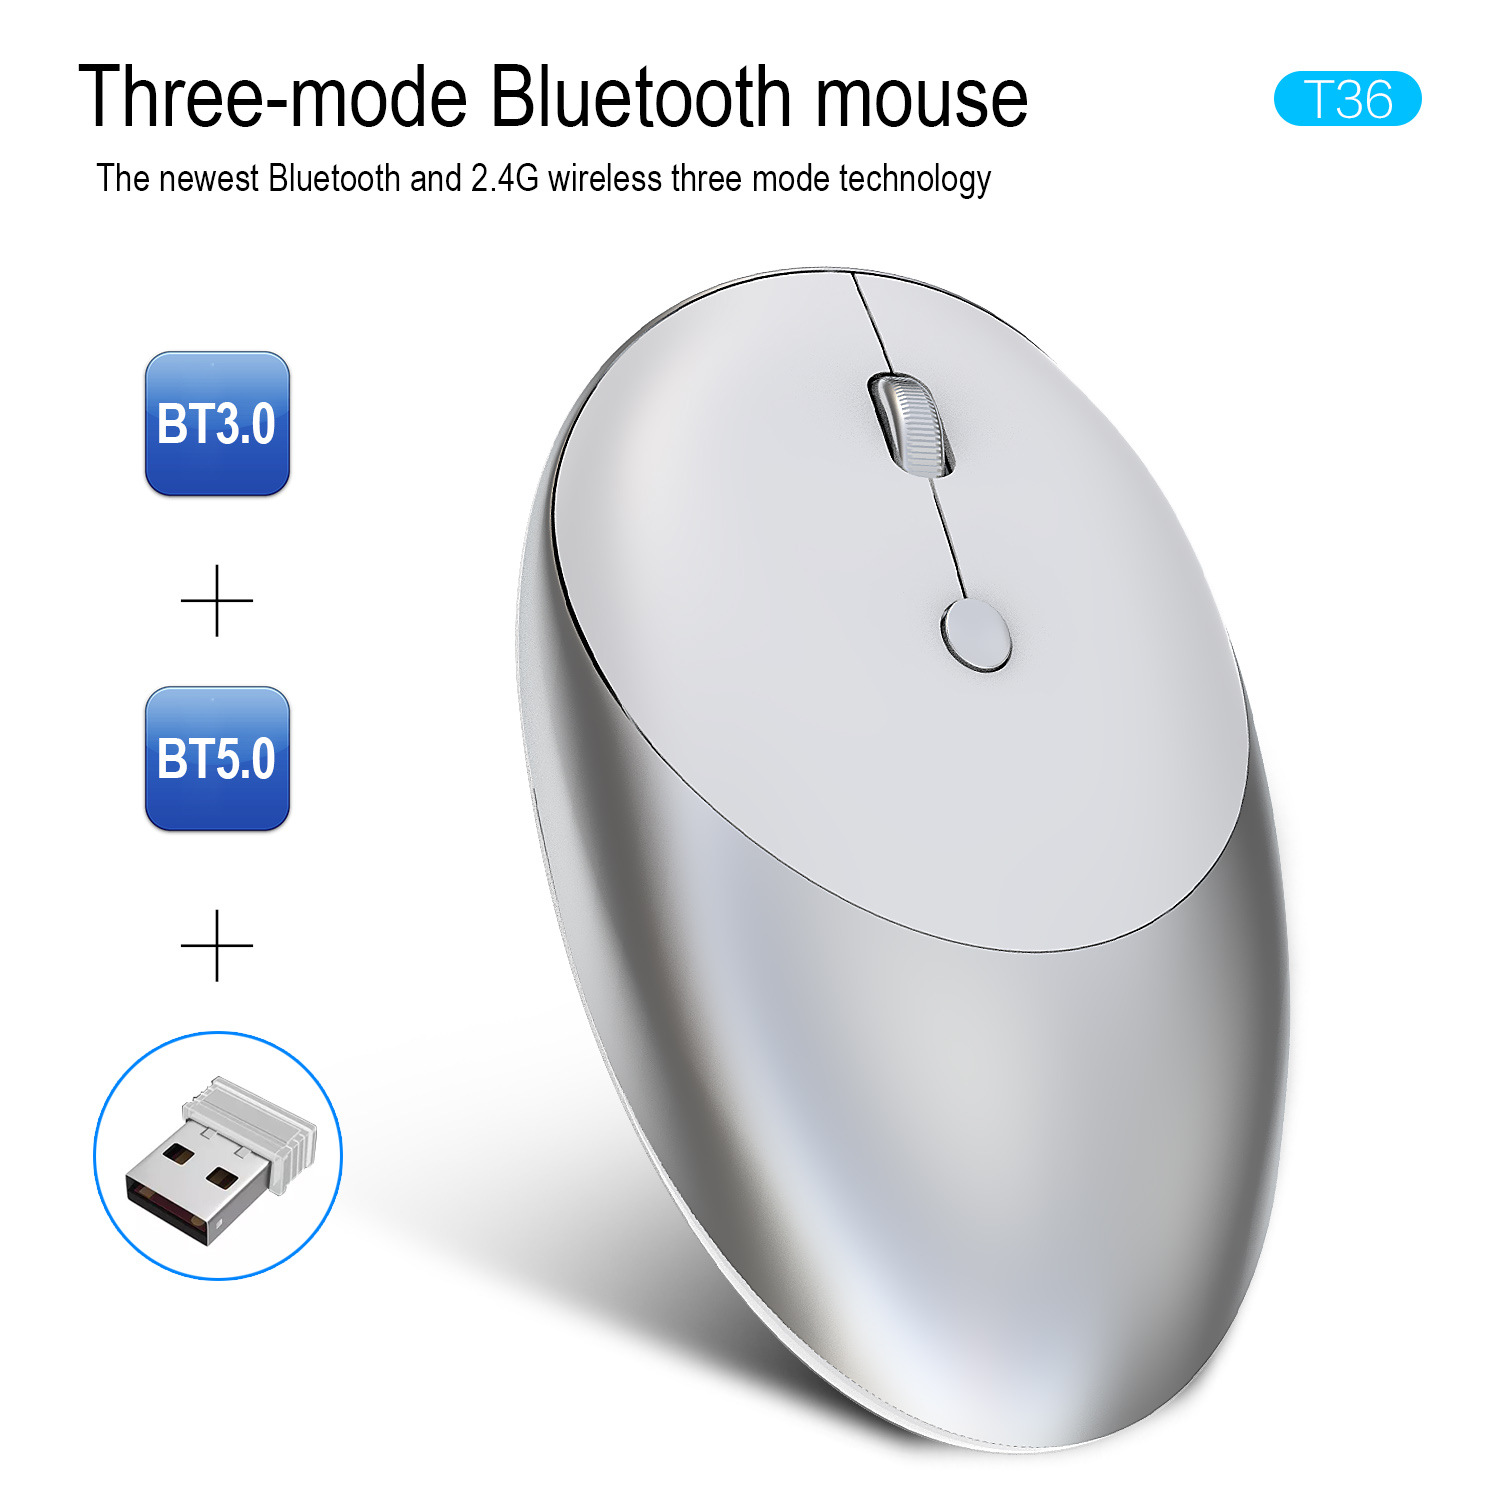 无线三模蓝牙5.0/3.0鼠标2.4G无线鼠标无声设计适合办公厂家批发